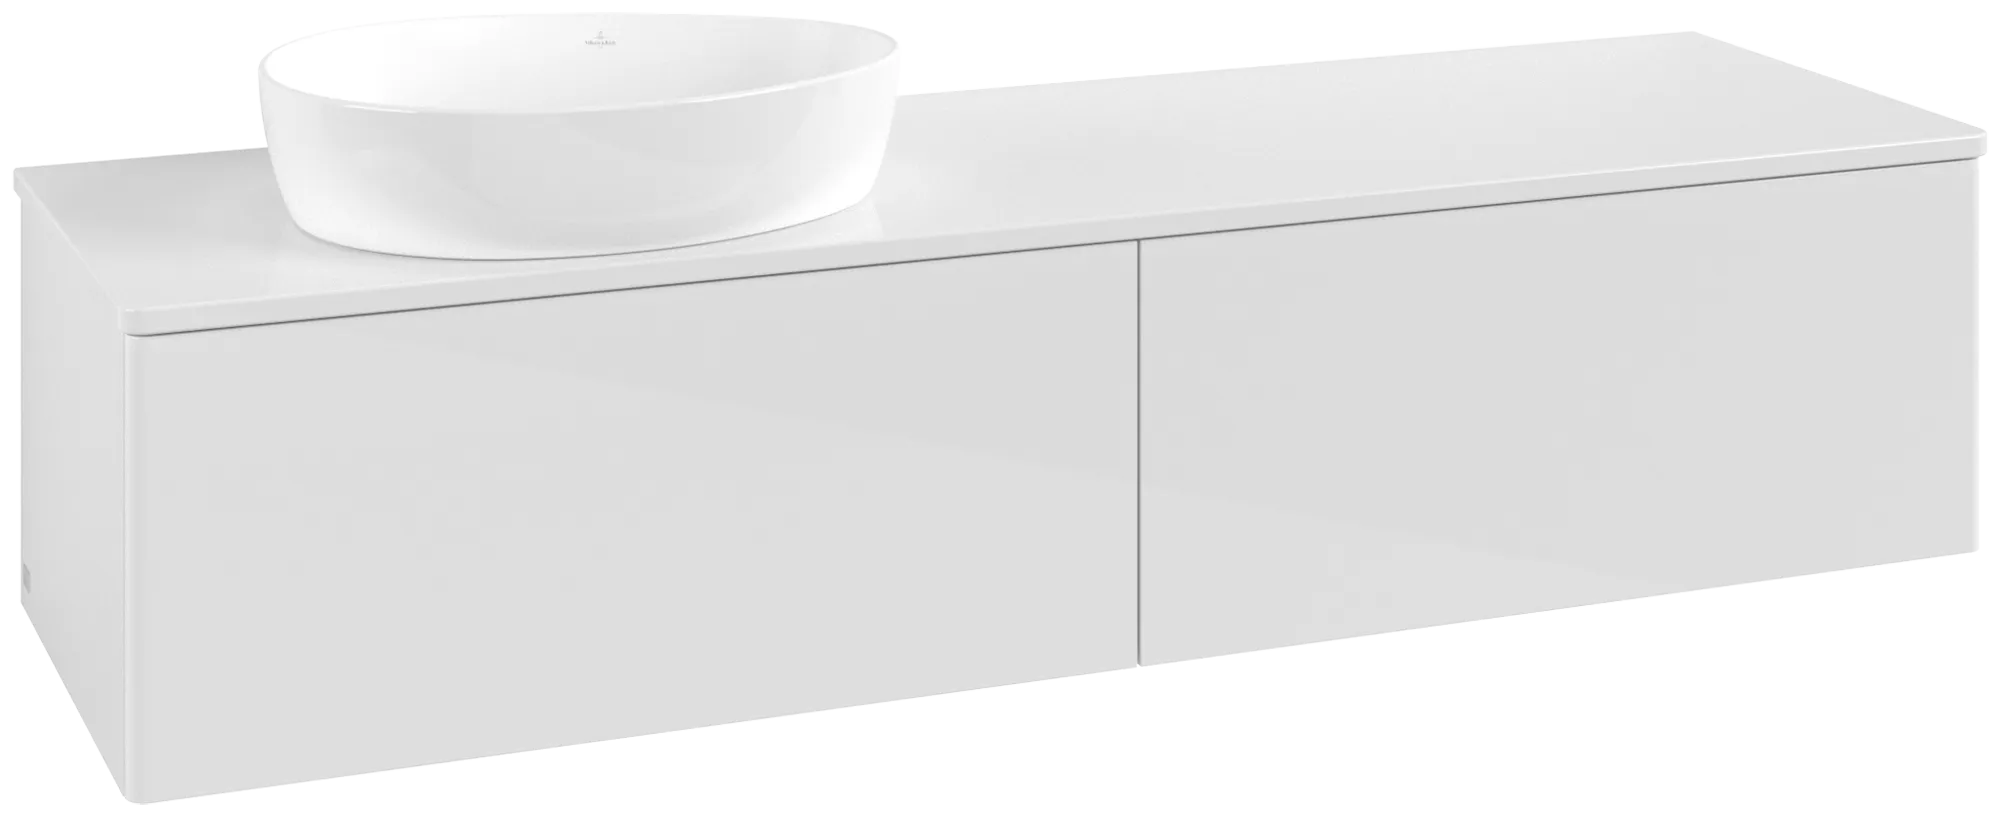 Bild von VILLEROY BOCH Antao Waschbeckenunterschrank, 2 Auszüge, 1600 x 360 x 500 mm, Front ohne Struktur, Glossy White Lacquer / Glossy White Lacquer #K37050GF